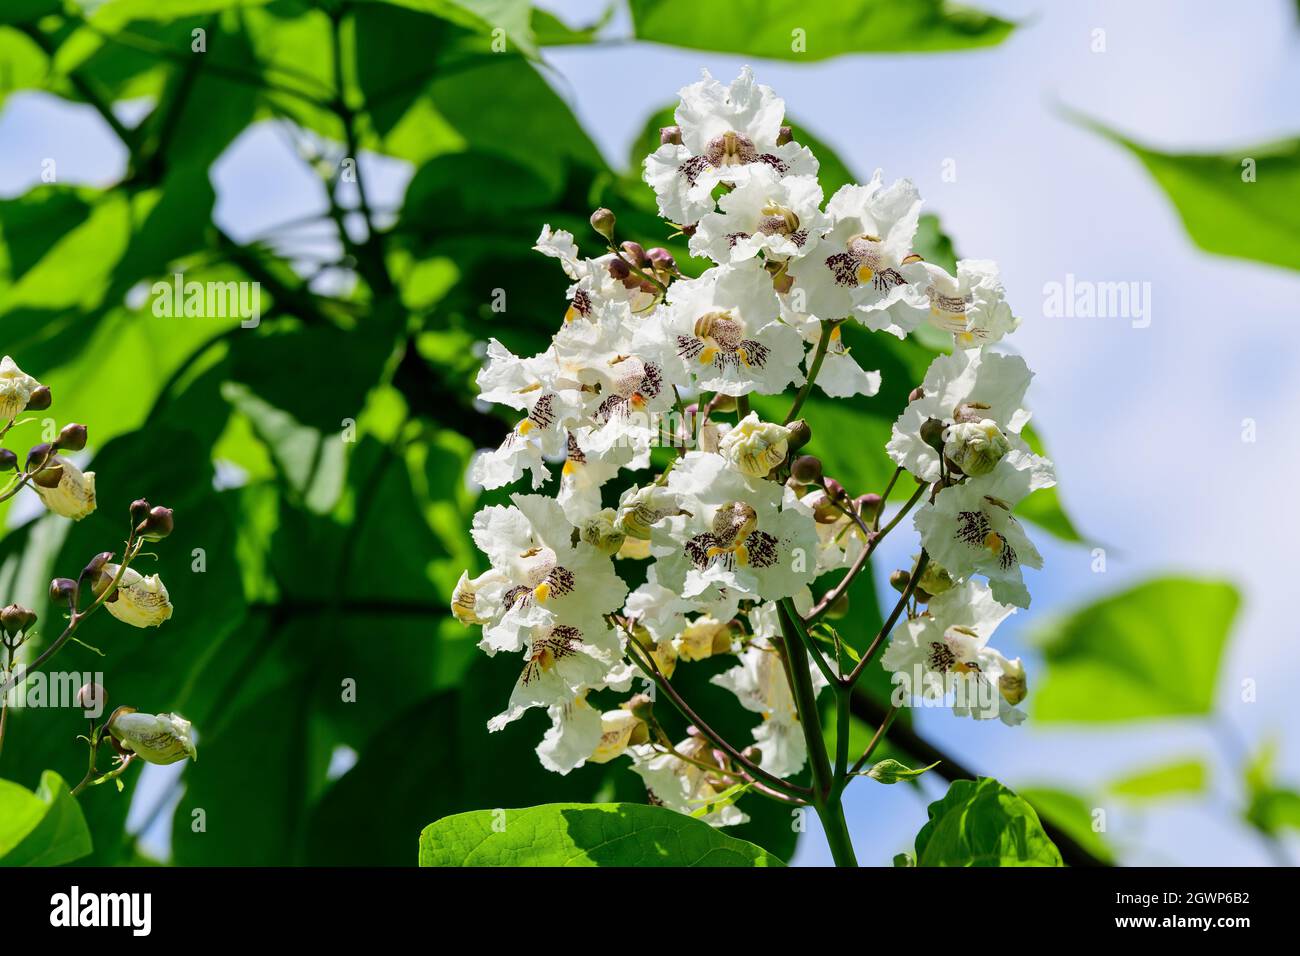 Flores blancas de Catalpa Bignonioides Planta conocida como Catalpa del Sur, cigarro o árbol de habas indias Foto de stock